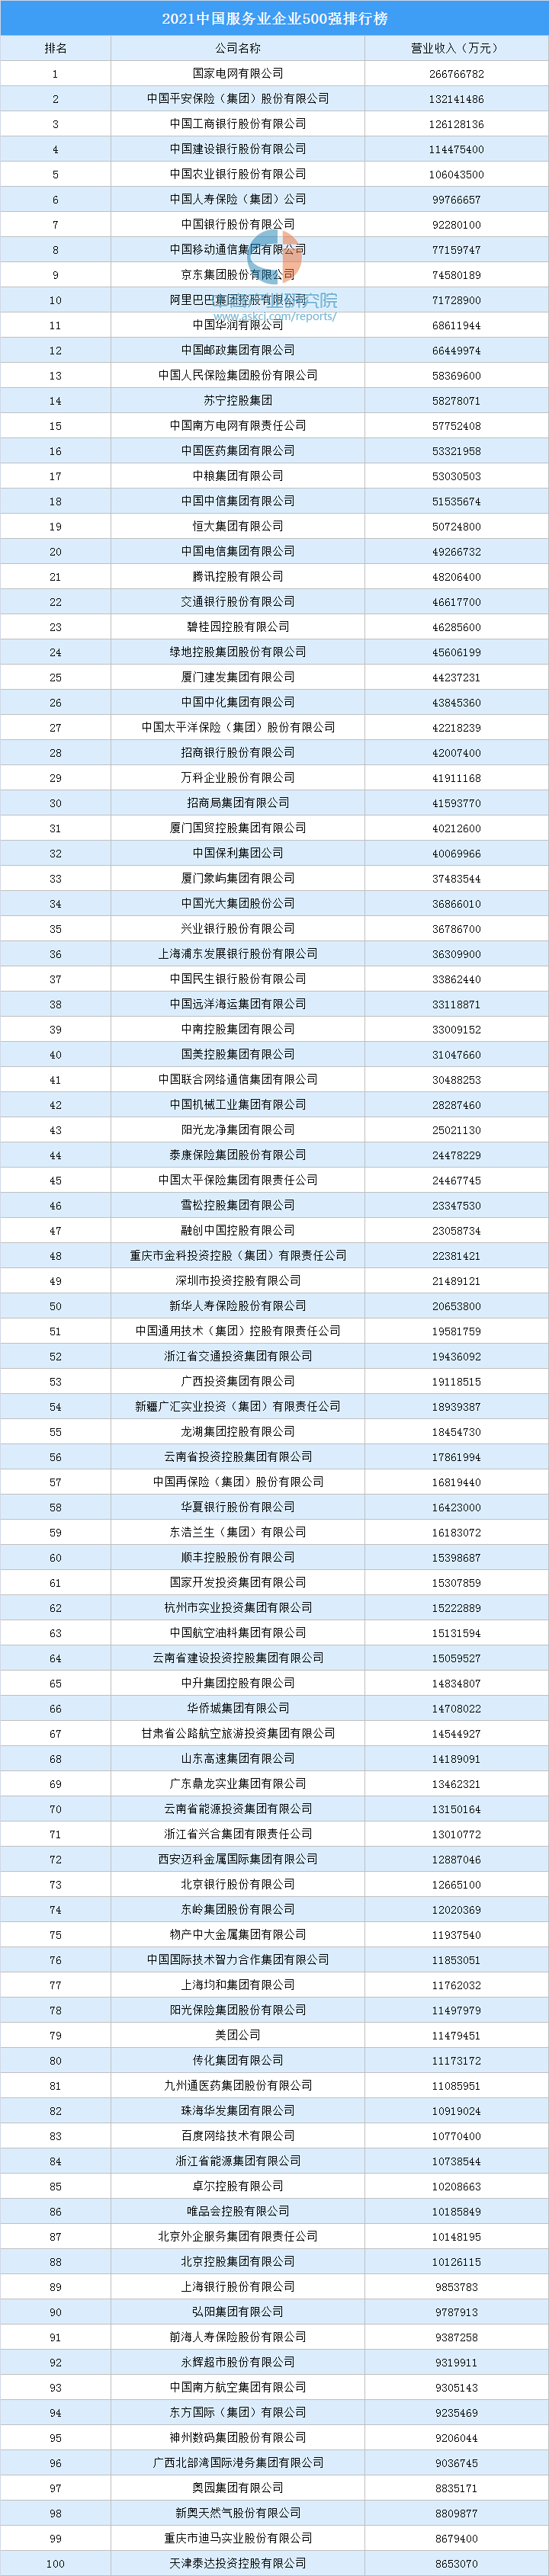 中国产业排行榜_2021年中国制造业500强榜北京上榜企业排行榜